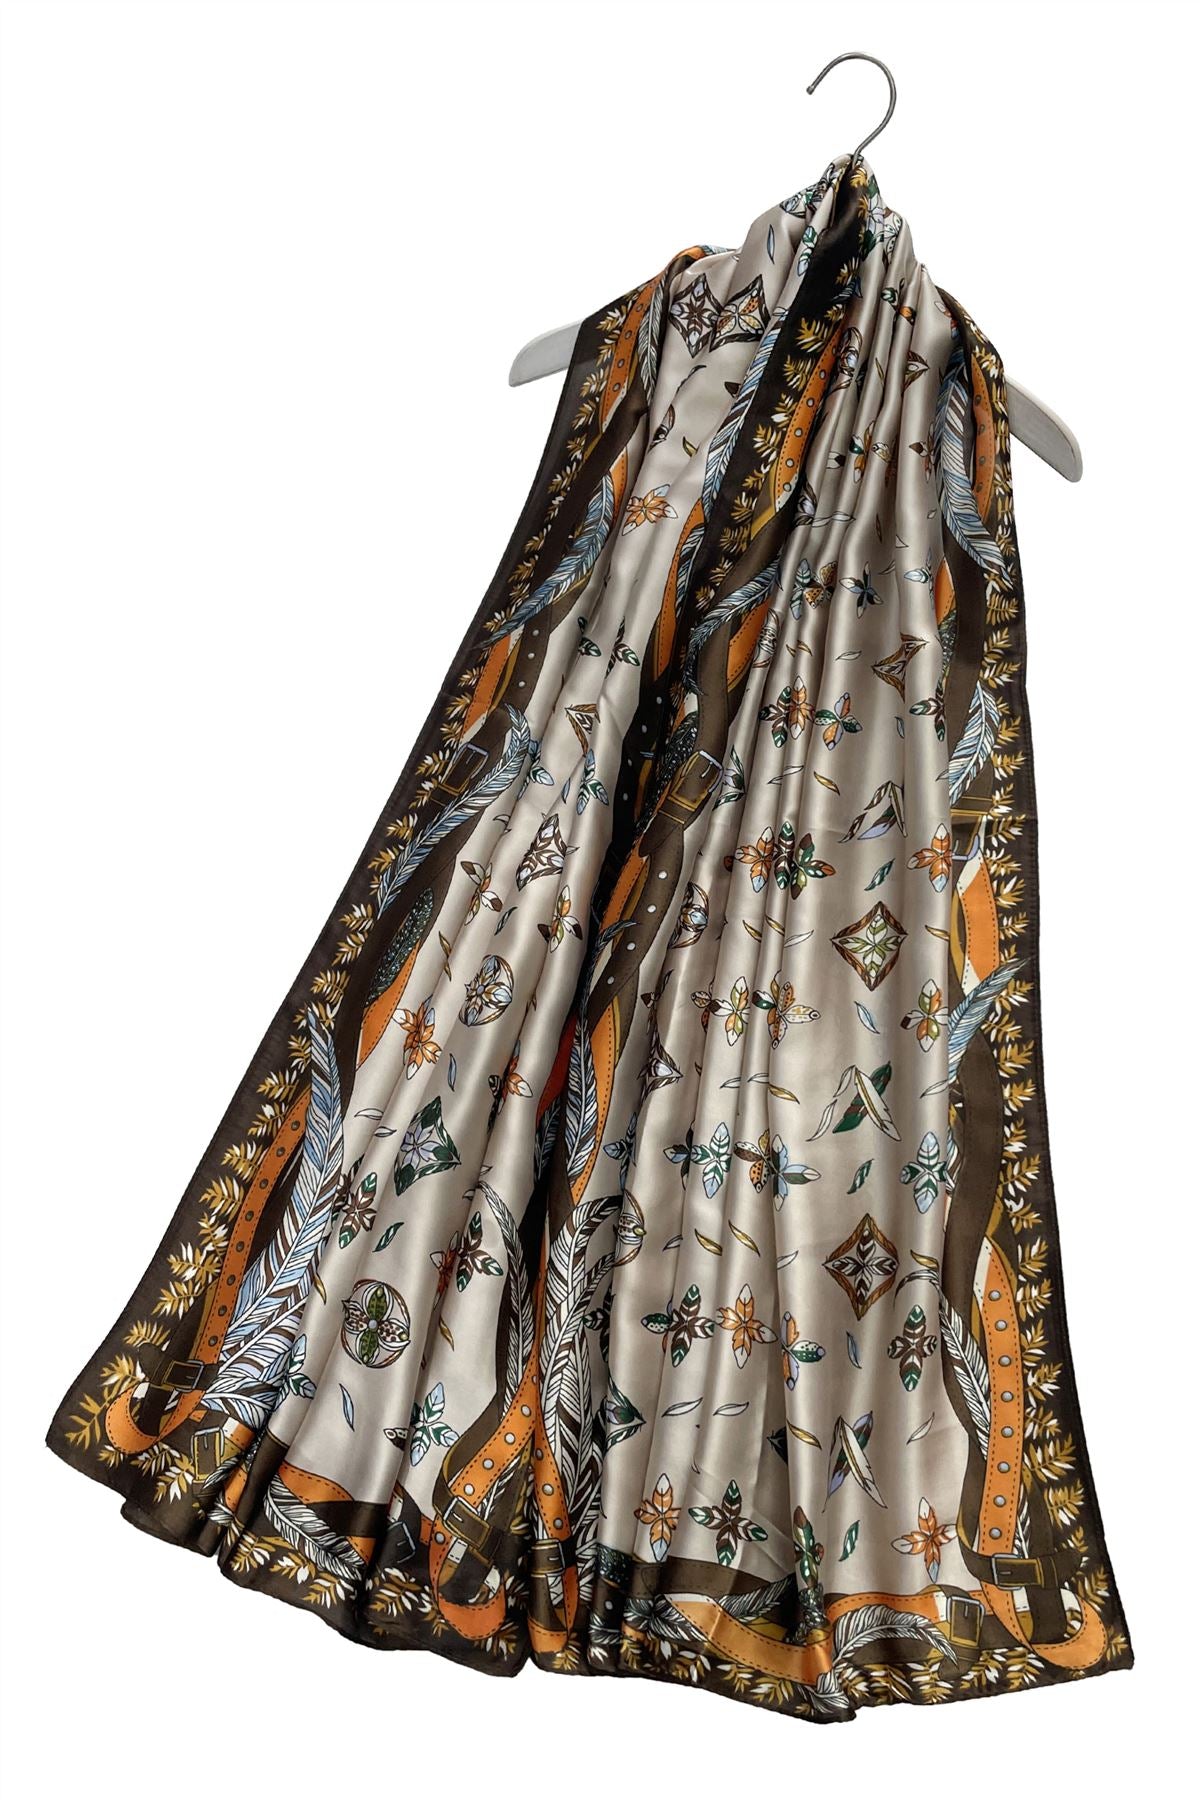 Feather & Floral Print Silk Scarf– Fashion Scarf World